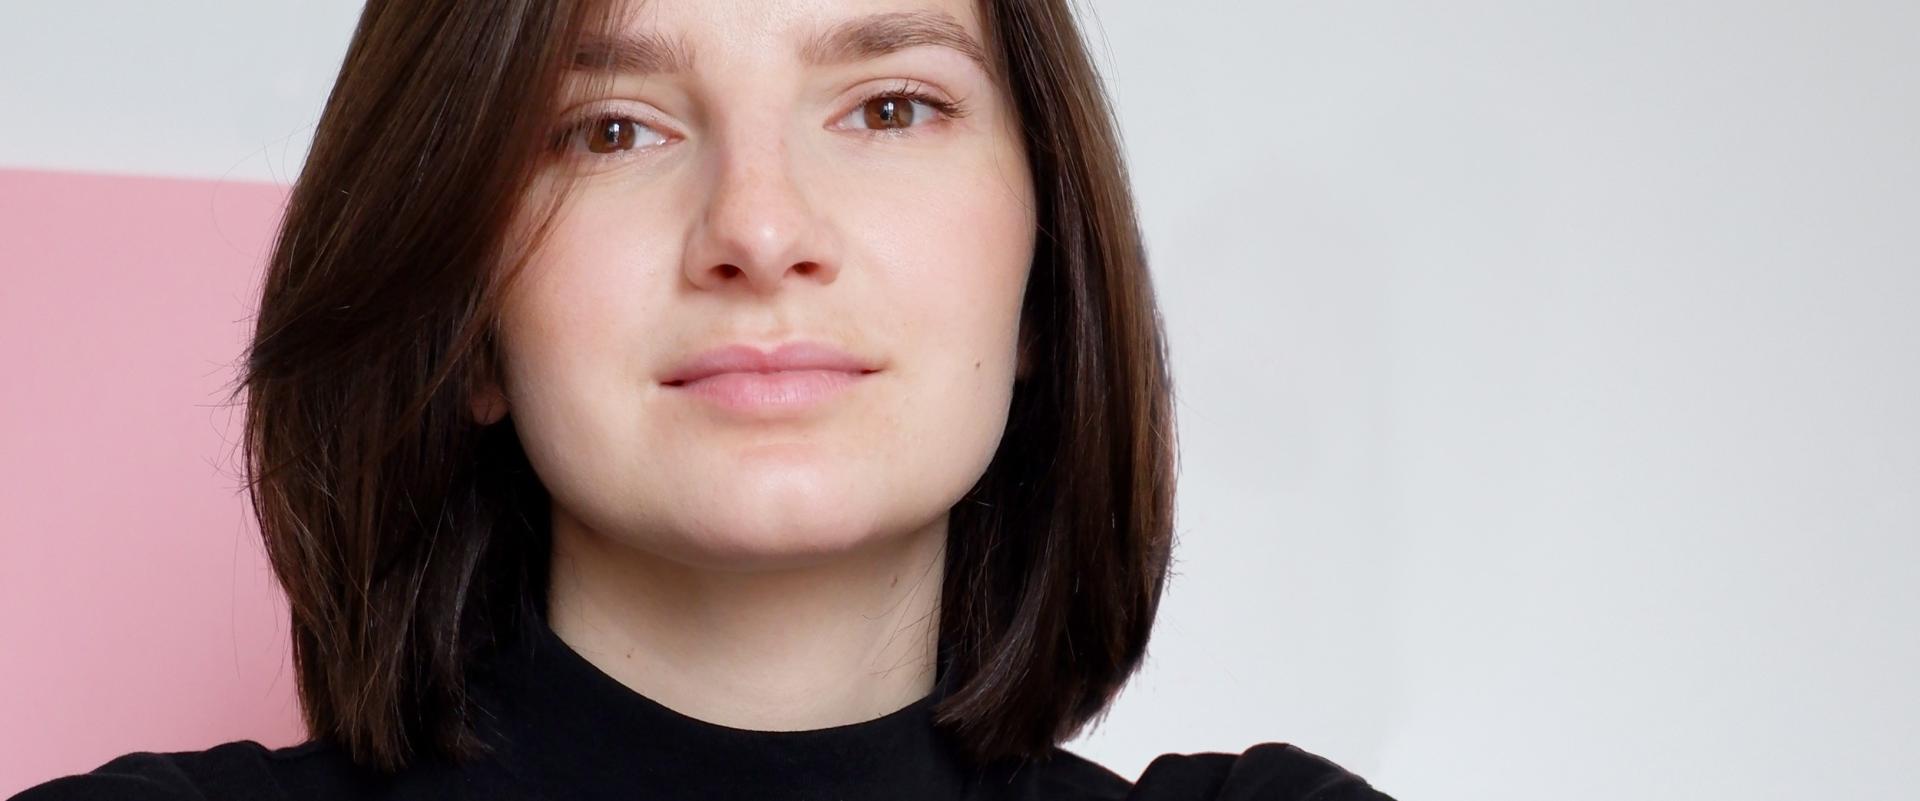 Agnieszka Kocoń, Simply More: Zmienia się definicja piękna, kobiety już inaczej je postrzegają